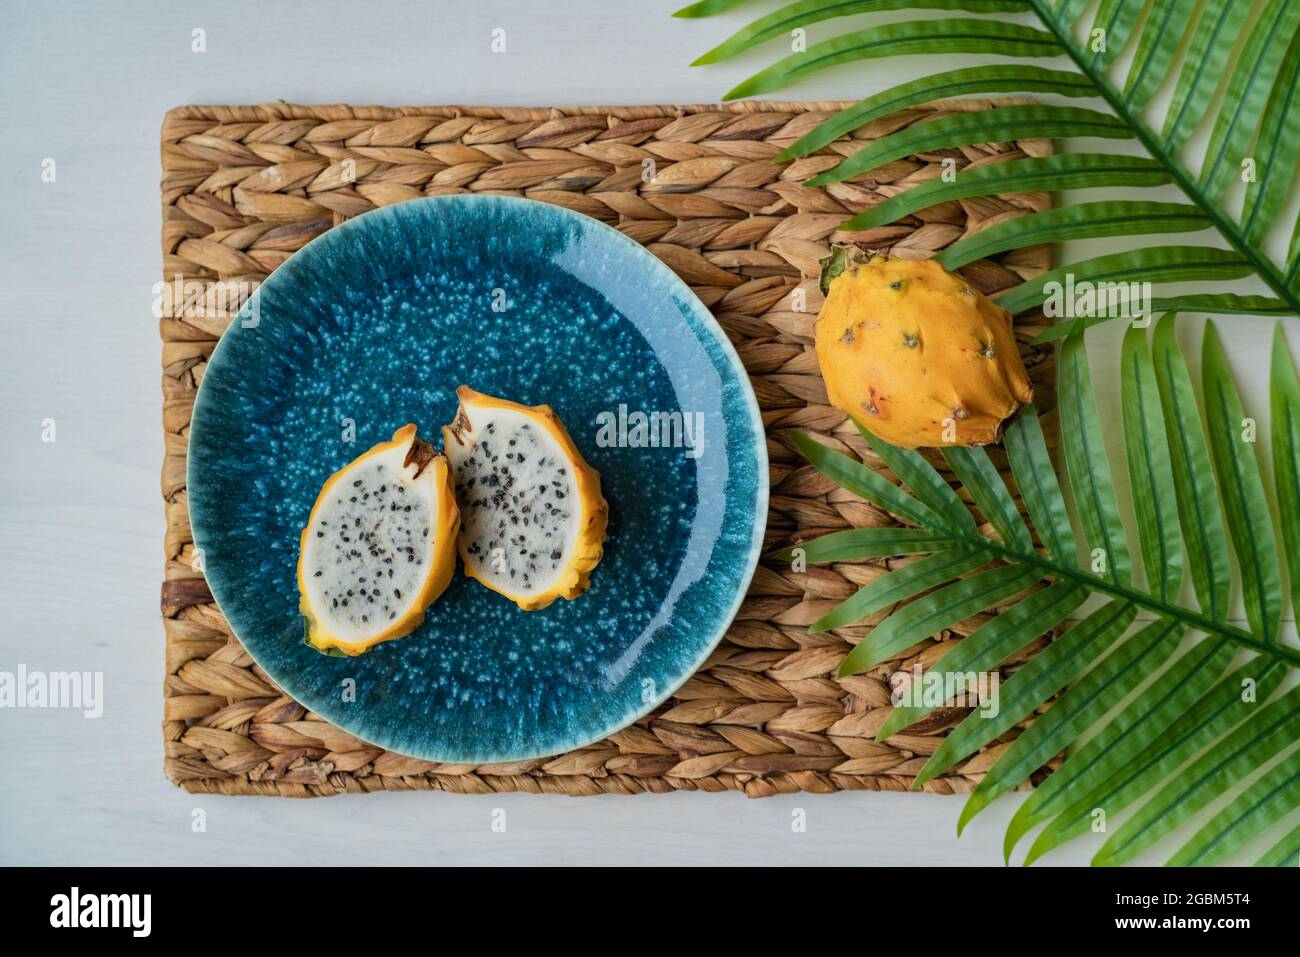 pitaya jaune dragonfruit en tranches présentées sur une assiette bleue sur la table. Fruit de dragon bio frais et sain. Hylocereus megalanthus Banque D'Images